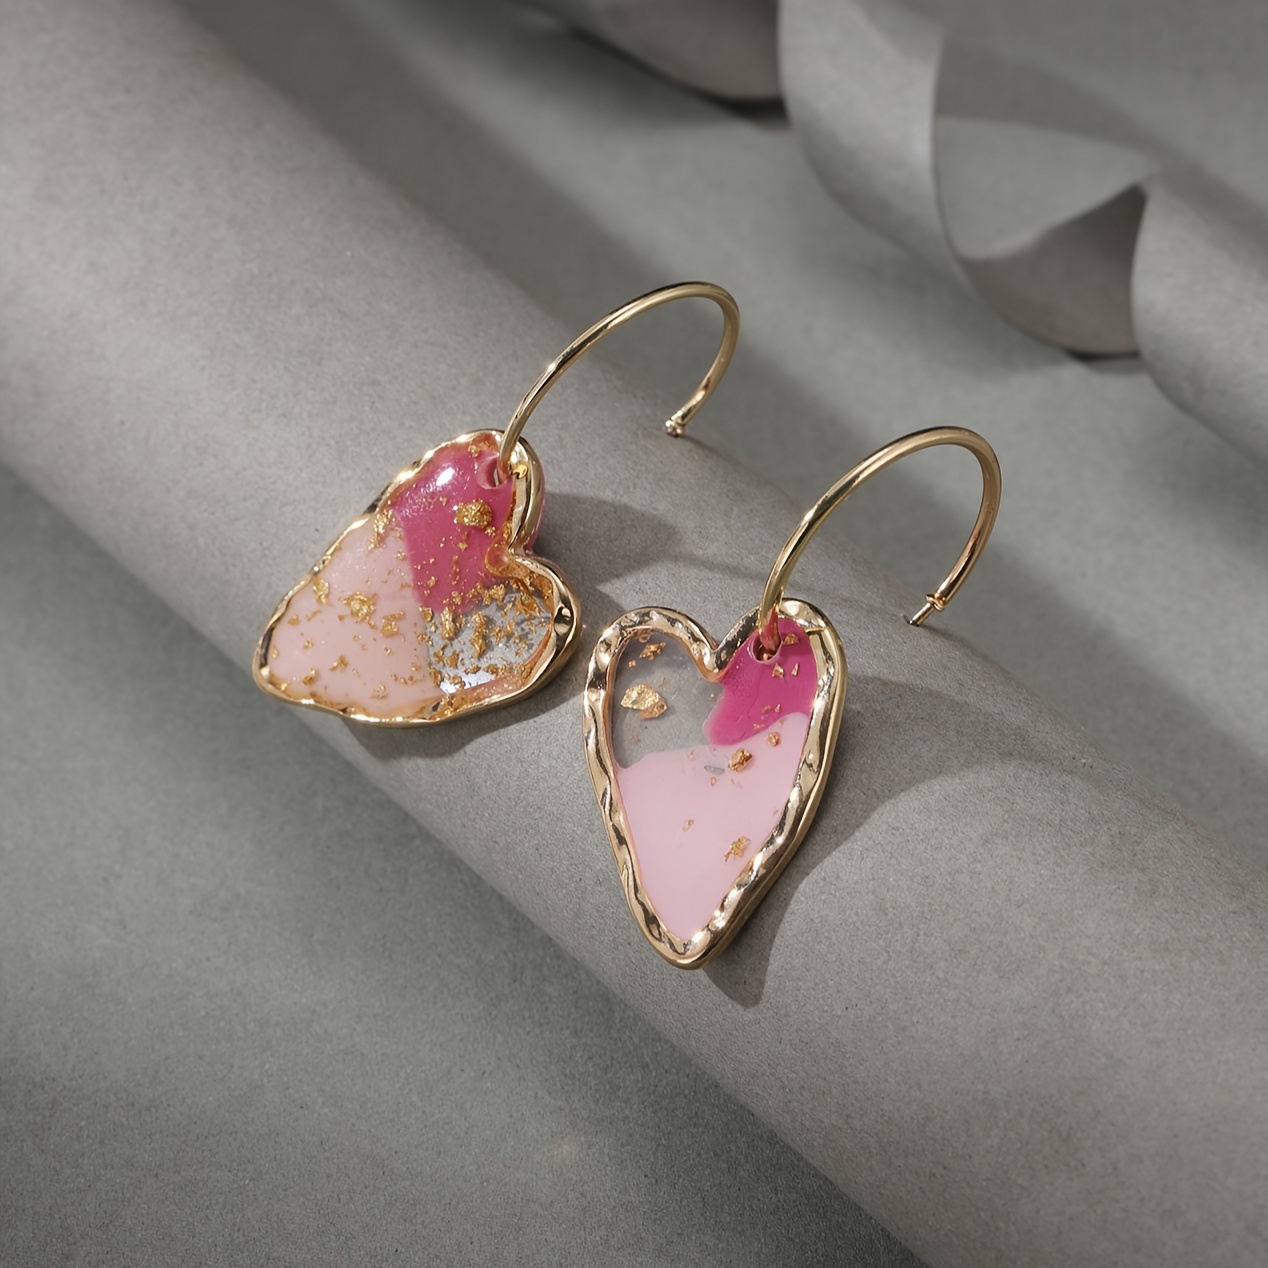 

Resin Love Heart Pendant Hoop Earrings, 18k Plated Ear Jewelry, Sweet Style Earrings For Women Valentine's Day Gifts